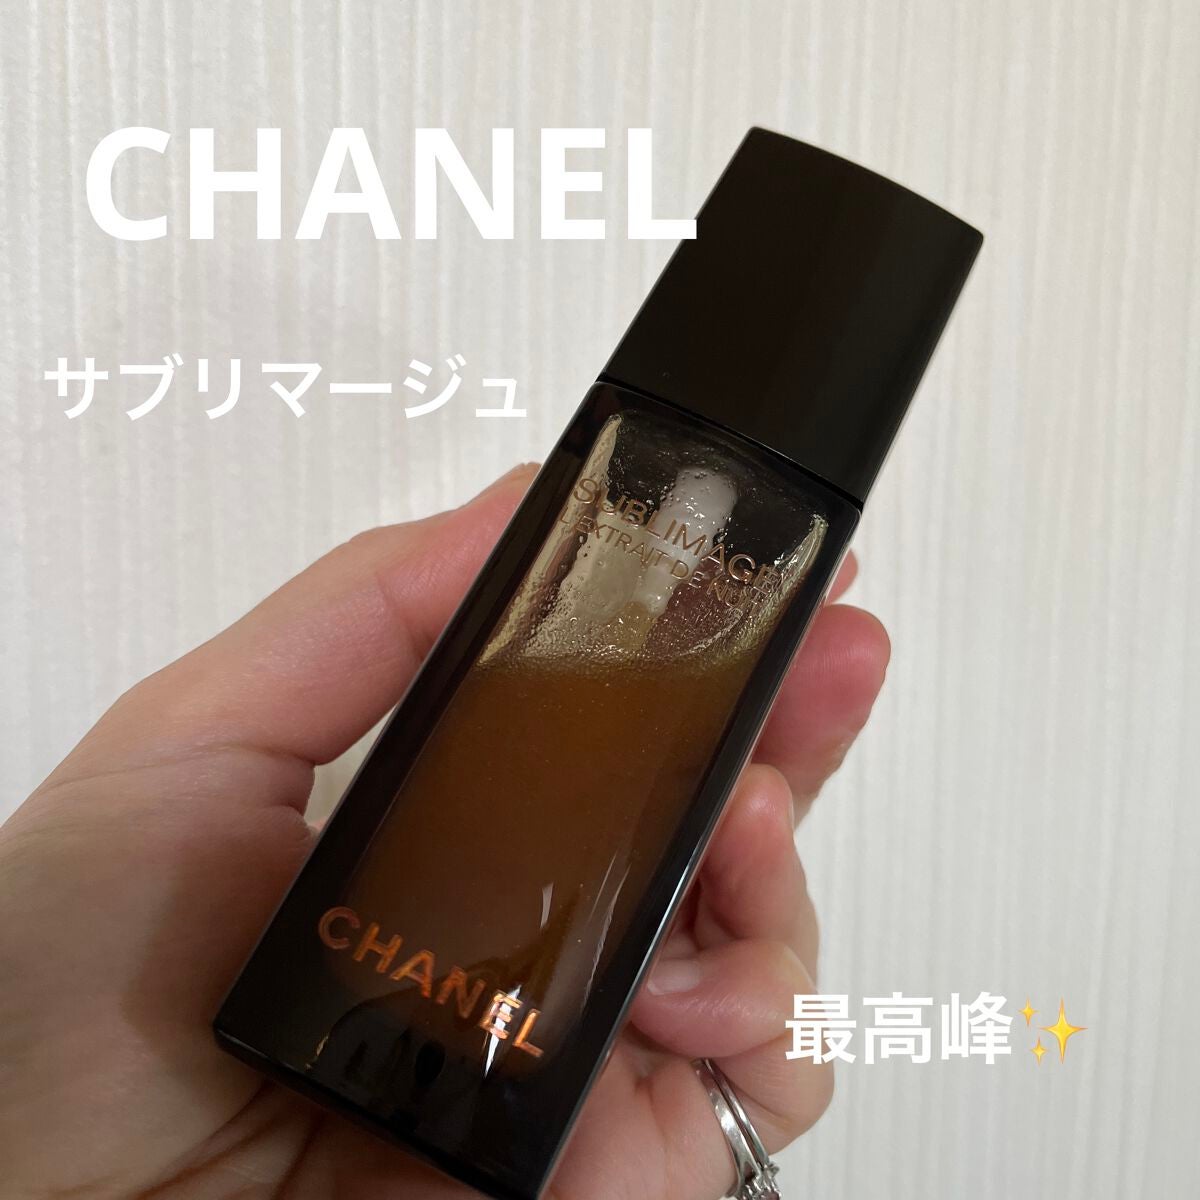 Chanel ♪シャネルサブリマージュ レクストレ - 美容液